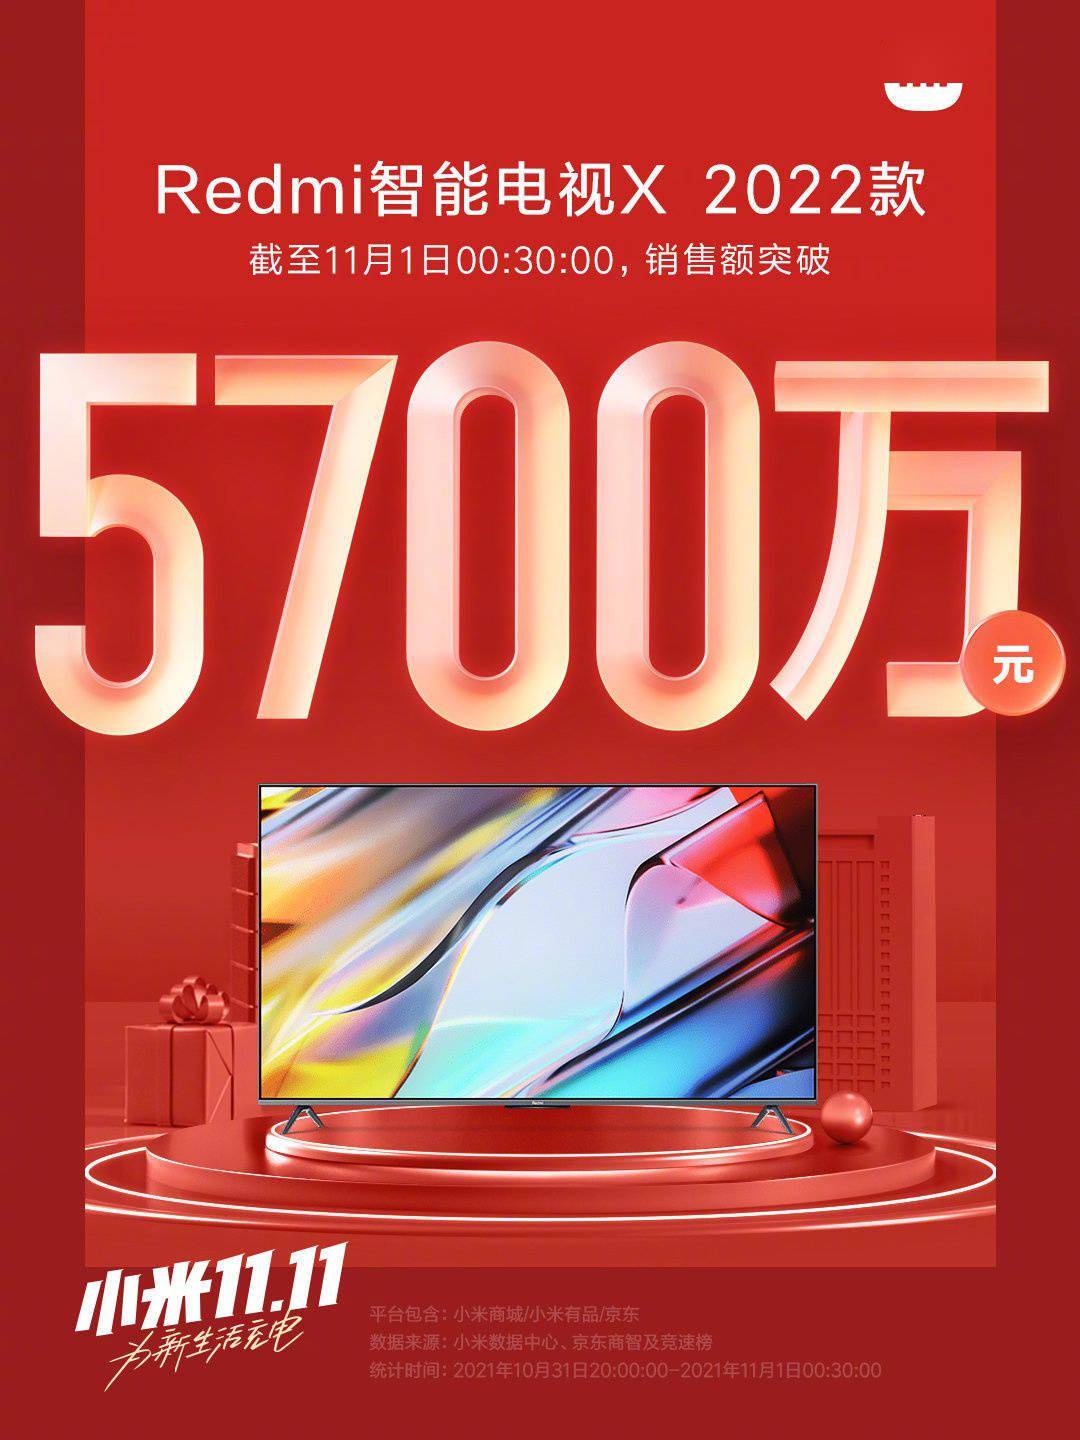 全系|Redmi 智能电视 X 2022 首销，截至零时 30 分销售额突破 5700 万